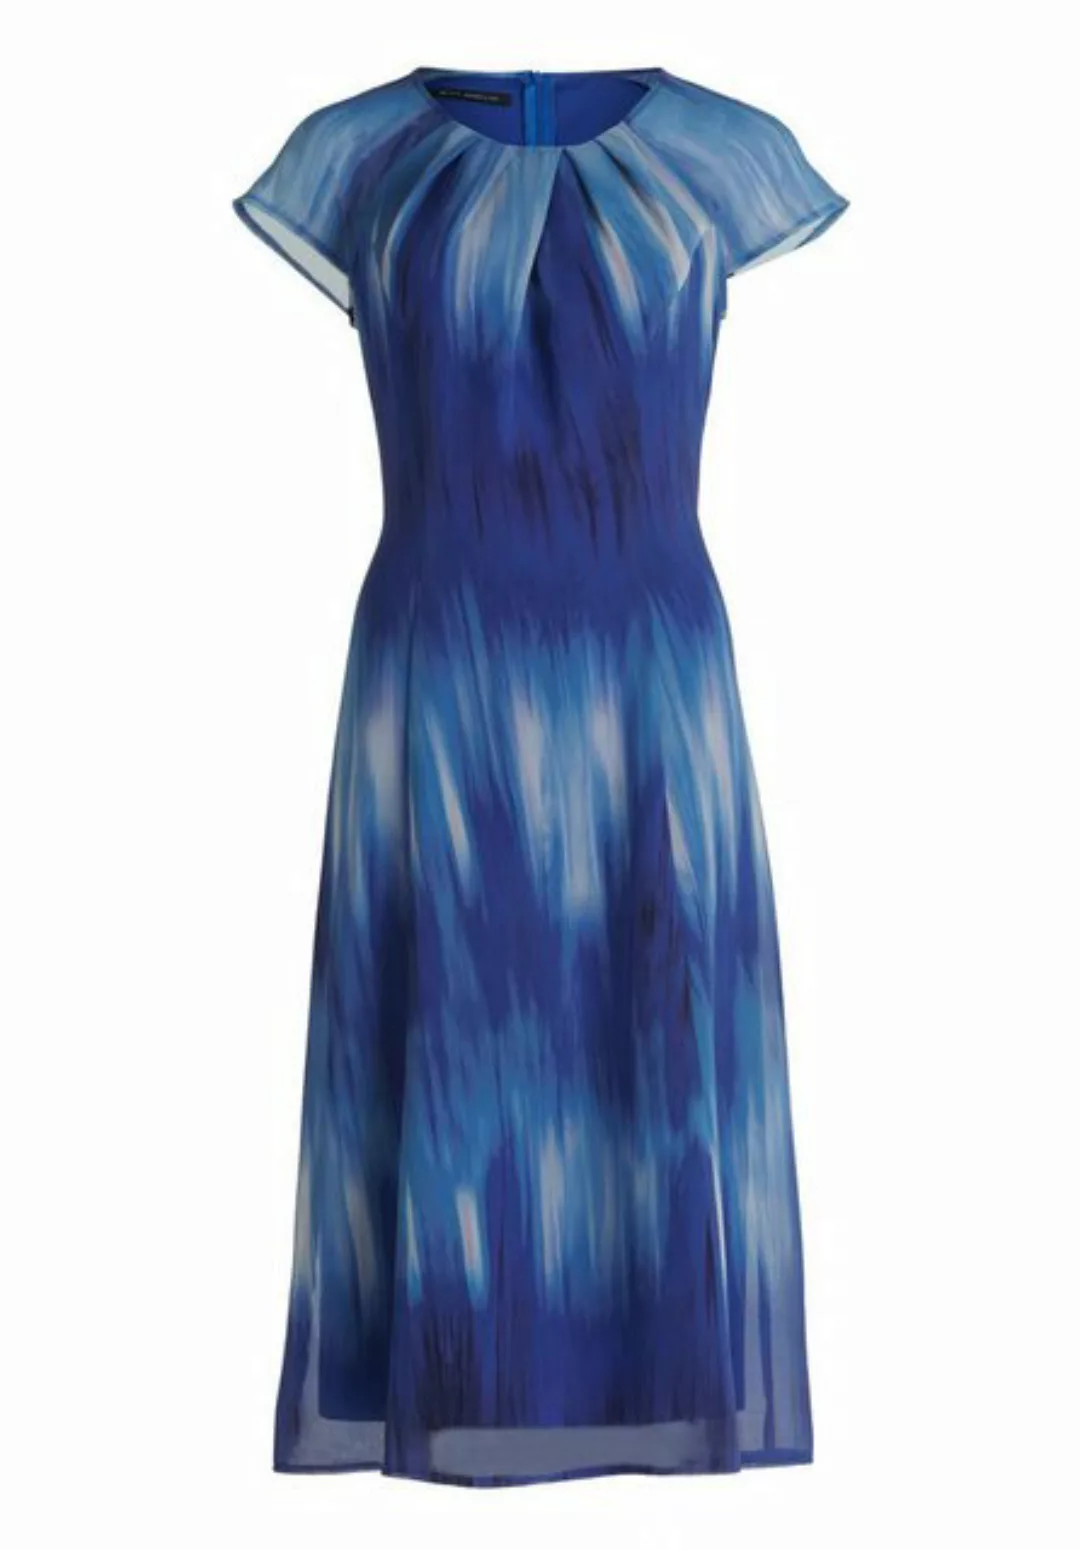 Betty Barclay Sommerkleid Kleid Lang 1/2 Arm, Blue/Blue günstig online kaufen